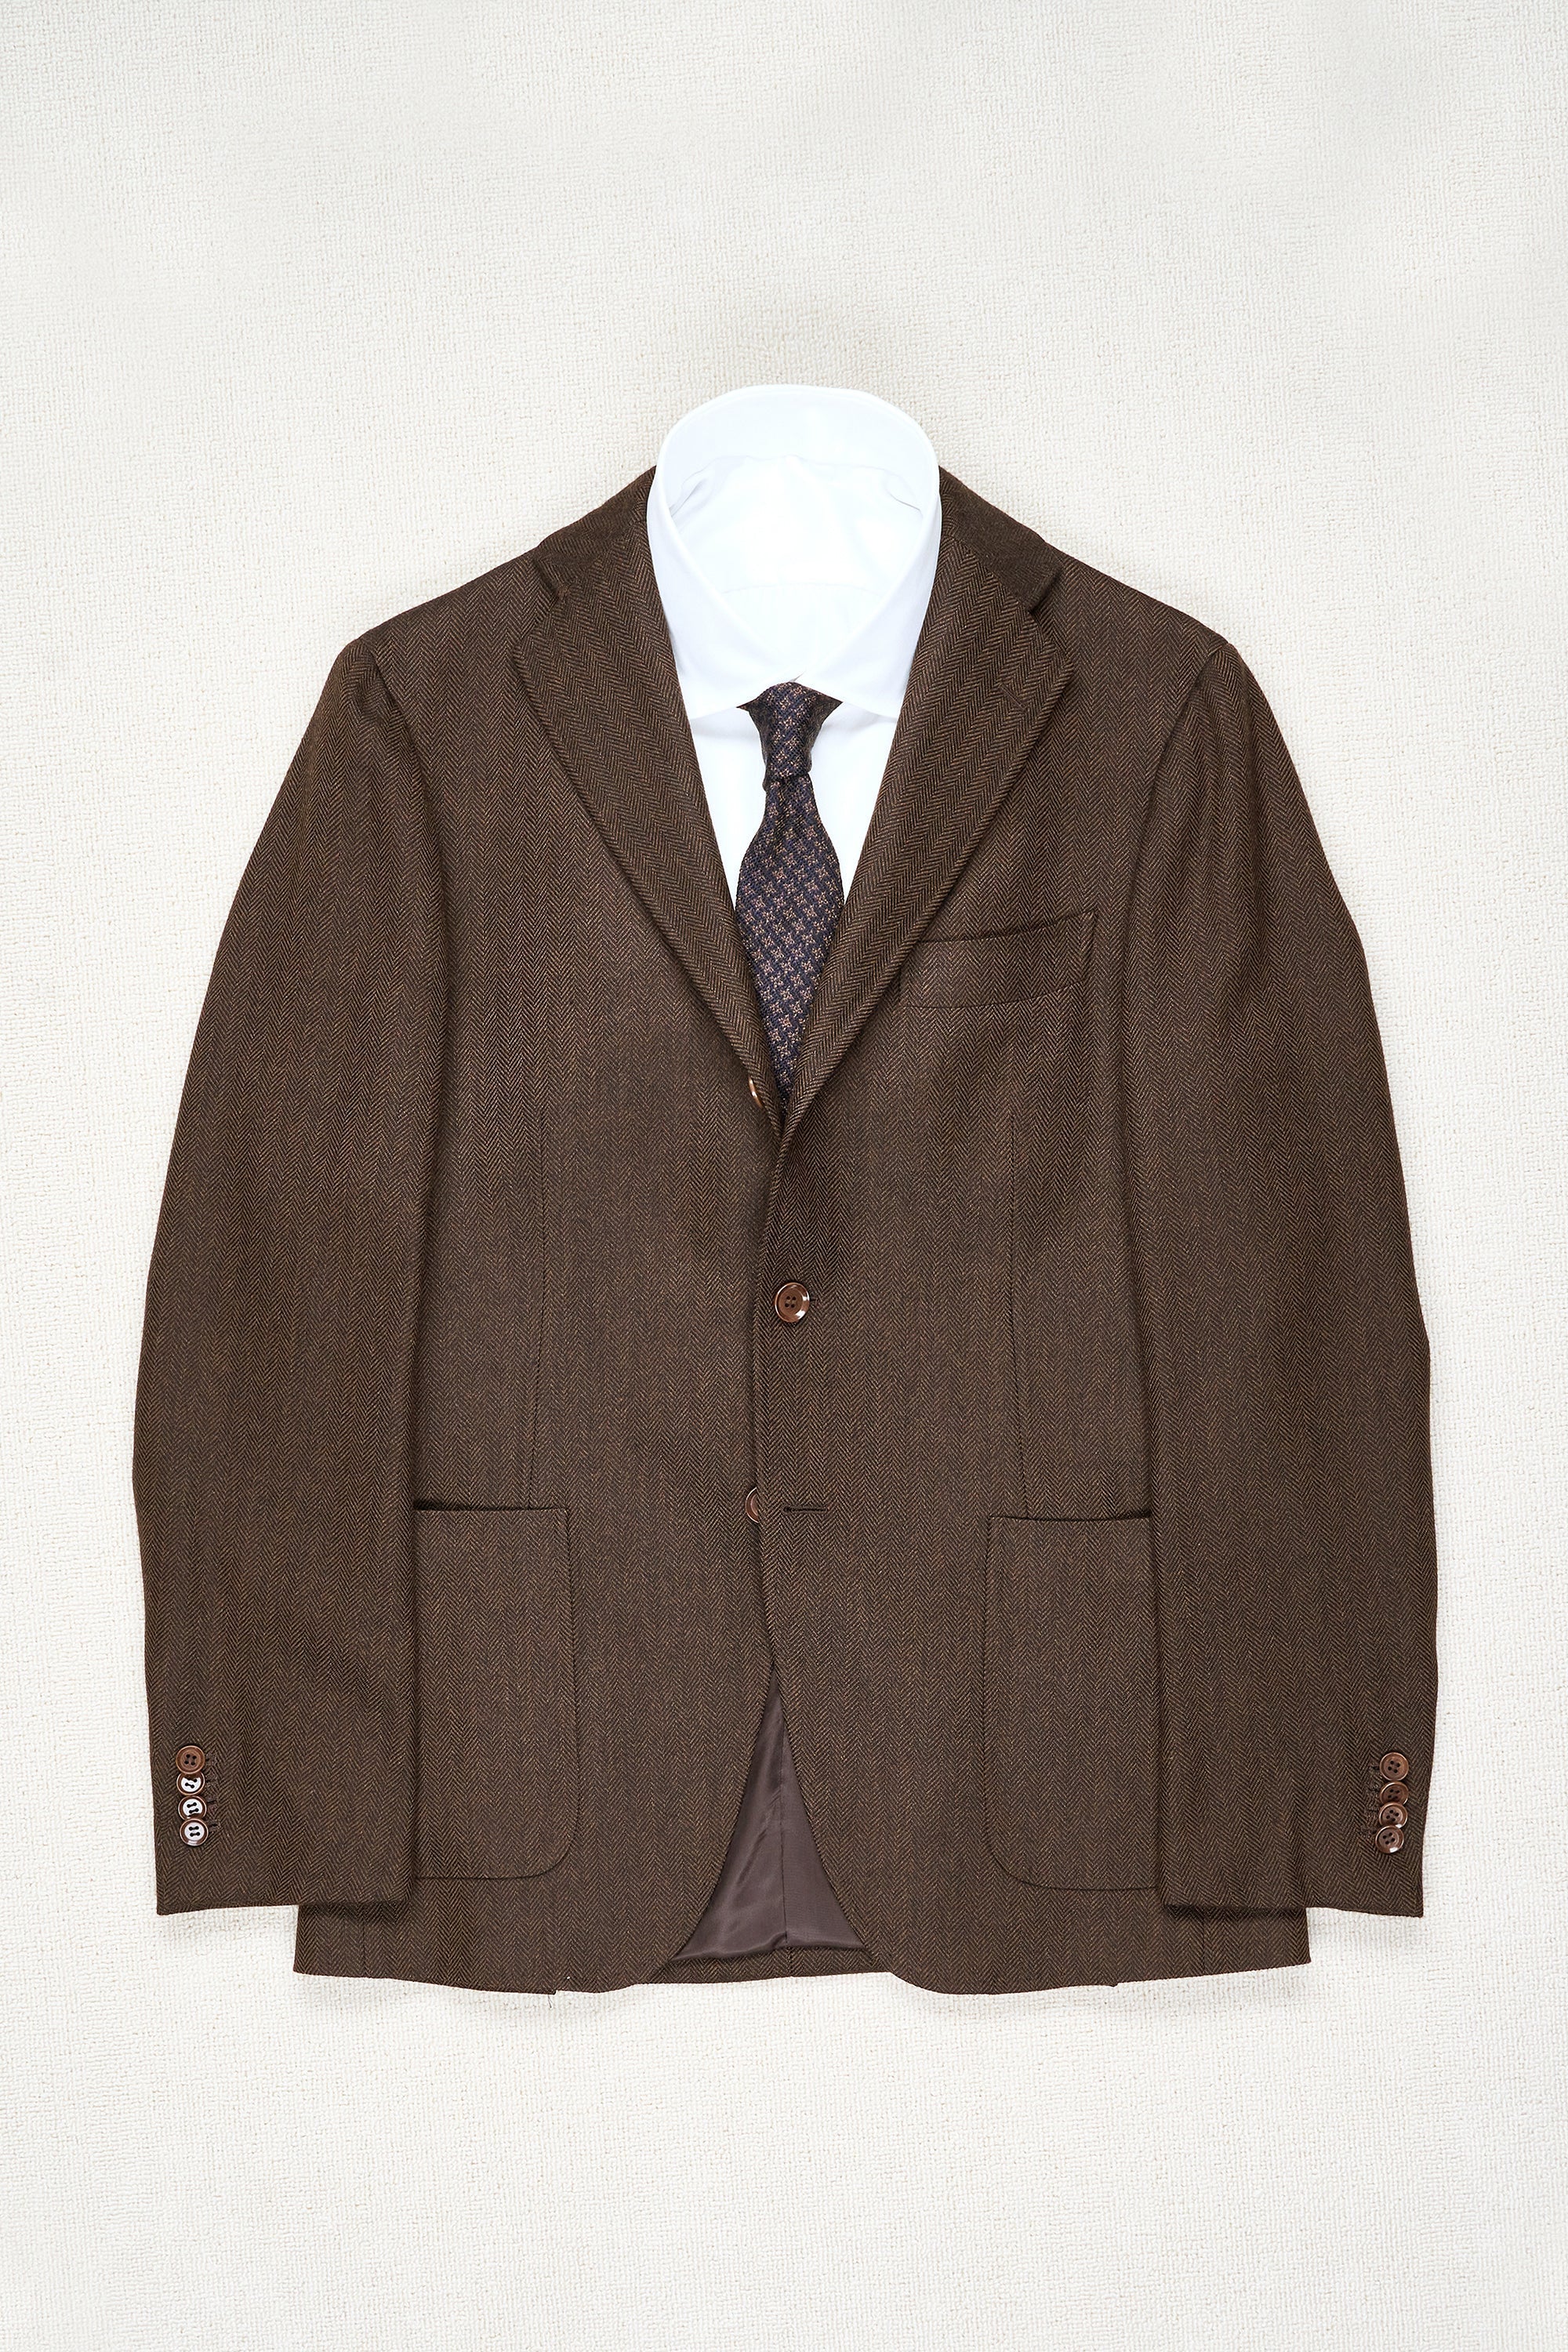 Ring Jacket 184 Dark Brown Herringbone Wool Sport Coat